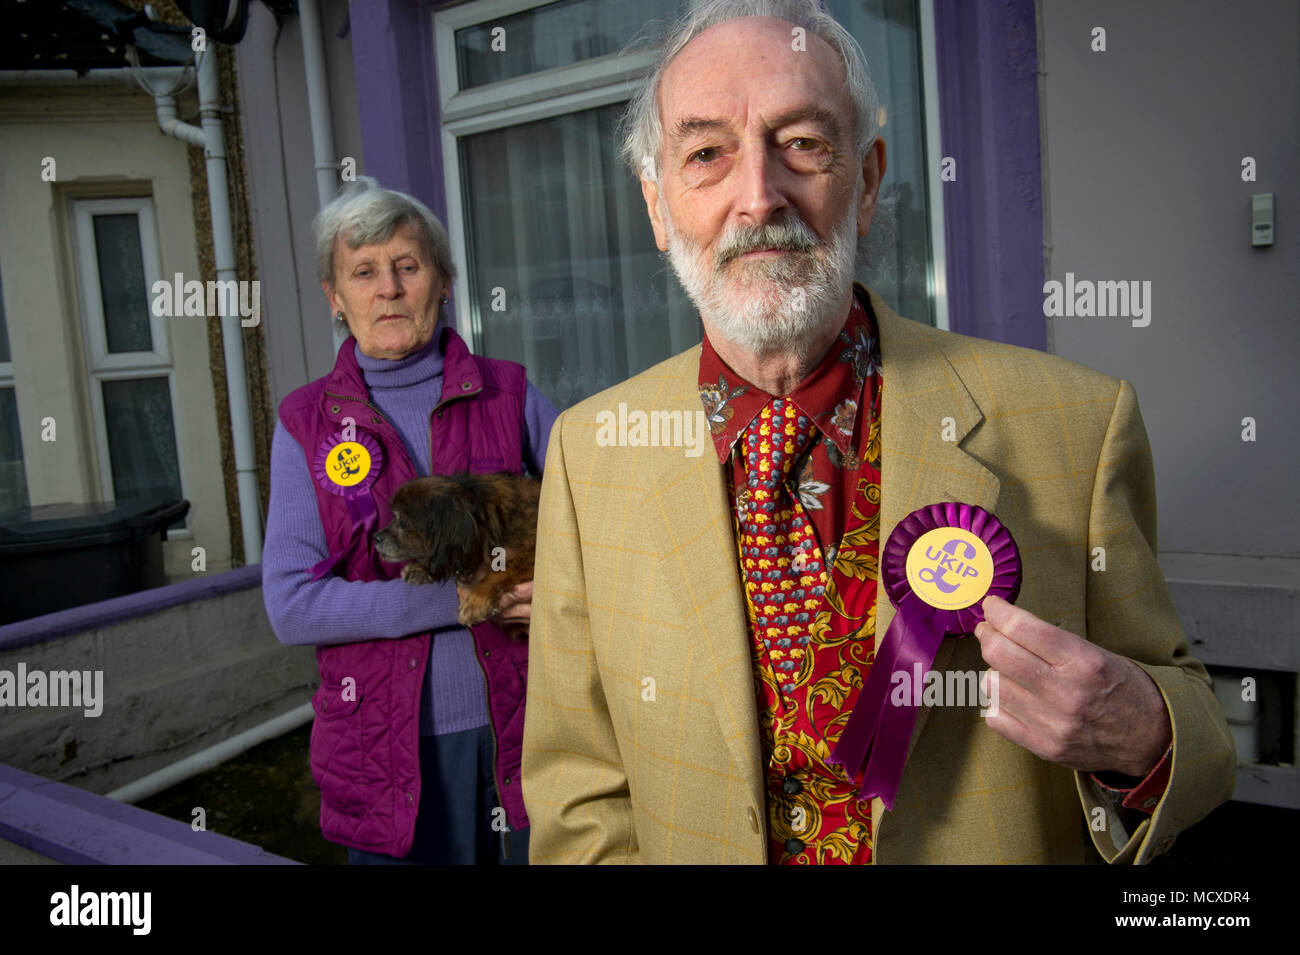 Aubrey & Sheila Attwater, mari et femme de l'UKIP candidats à Swindon Wiltshire, photographiés devant leur couleur pourpre (UKIP) painted house. Banque D'Images